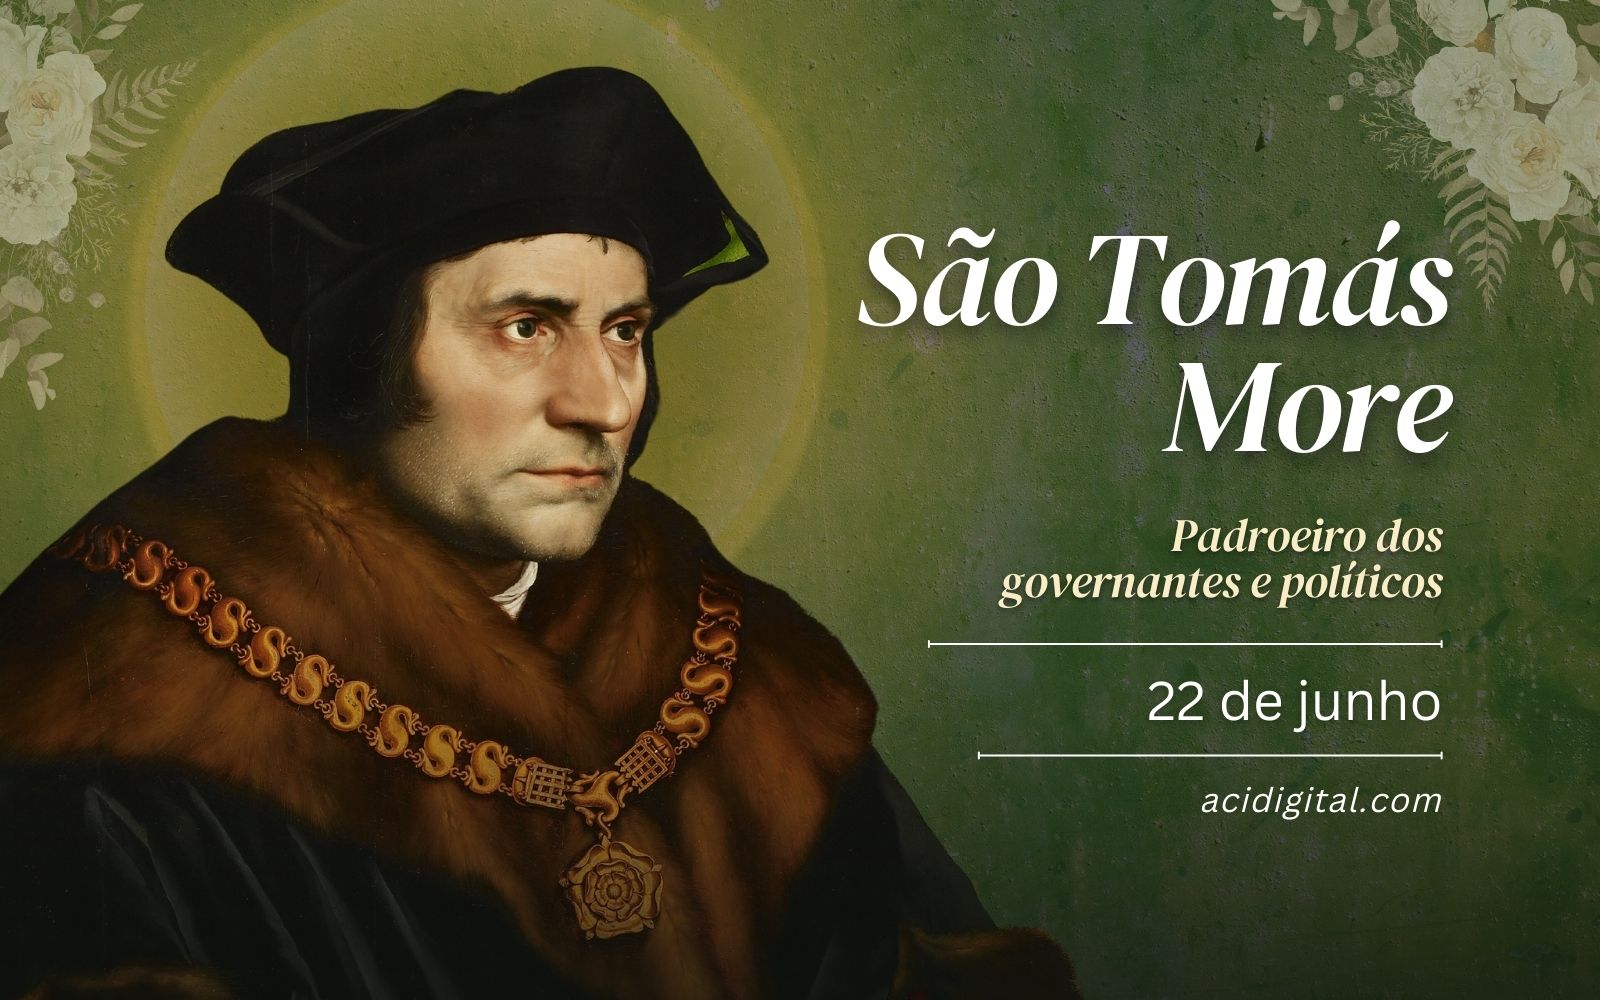 São Tomás More, padroeiro dos governantes e políticos